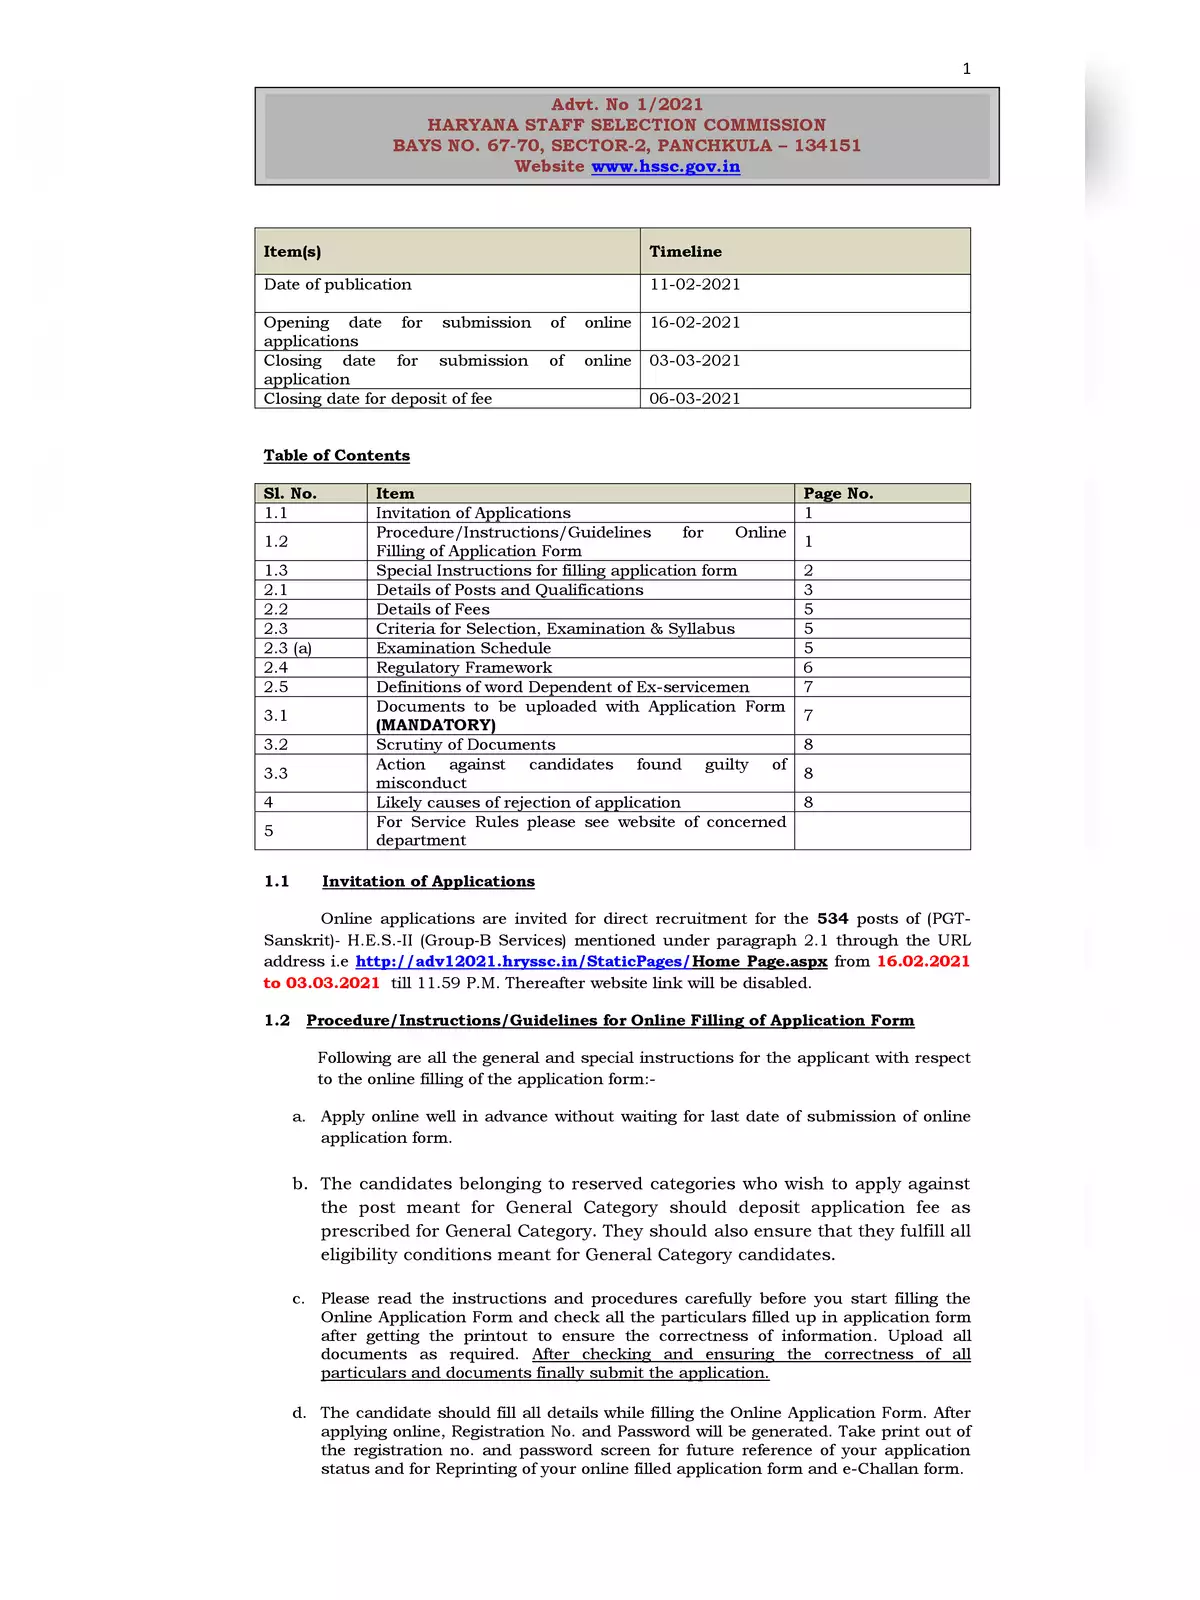 HSSC PGT Recruitment Notification 2021